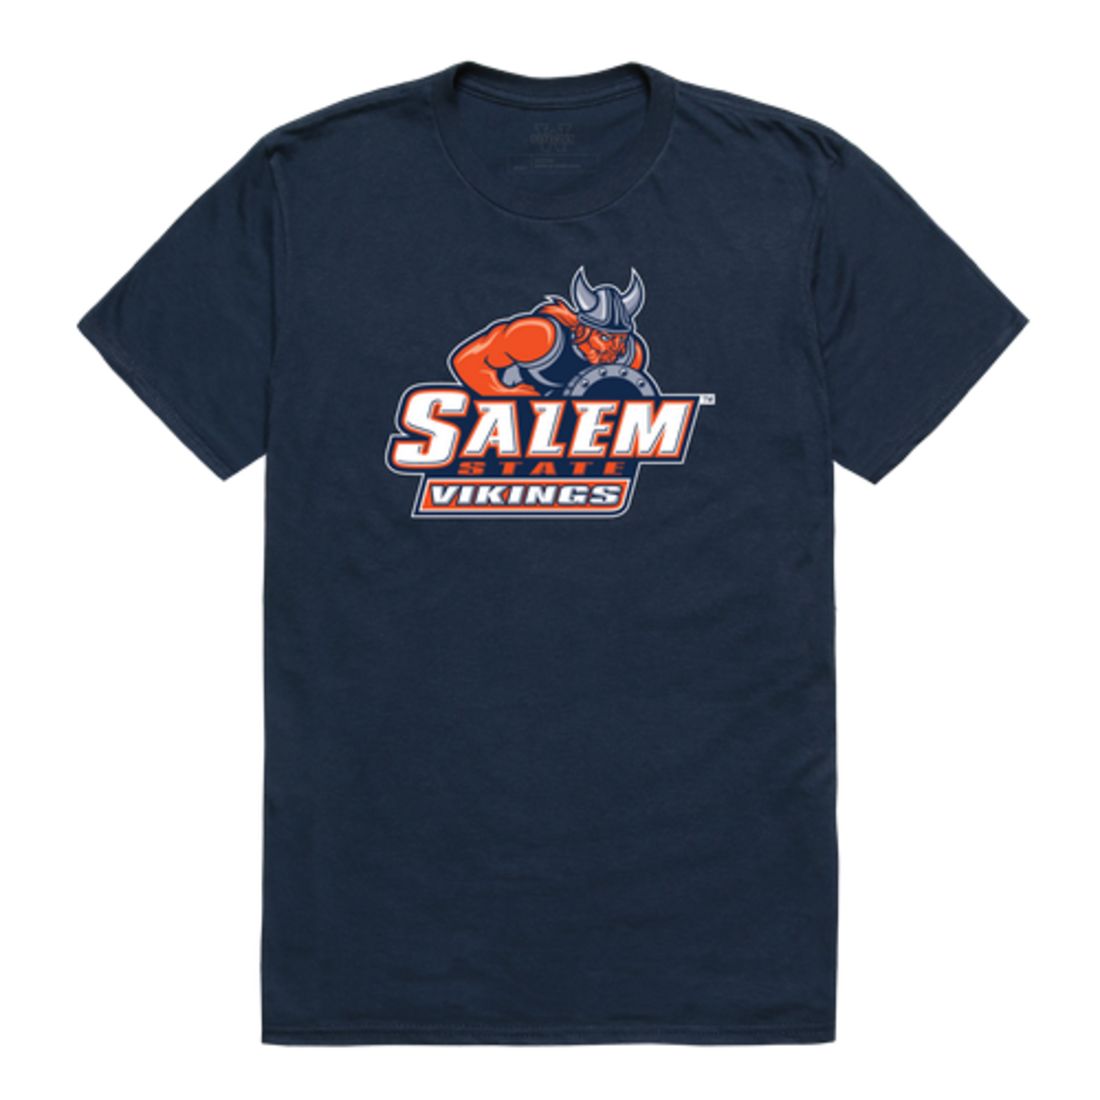 Salem State University Vikings The Freshmen T-Shirt Tee